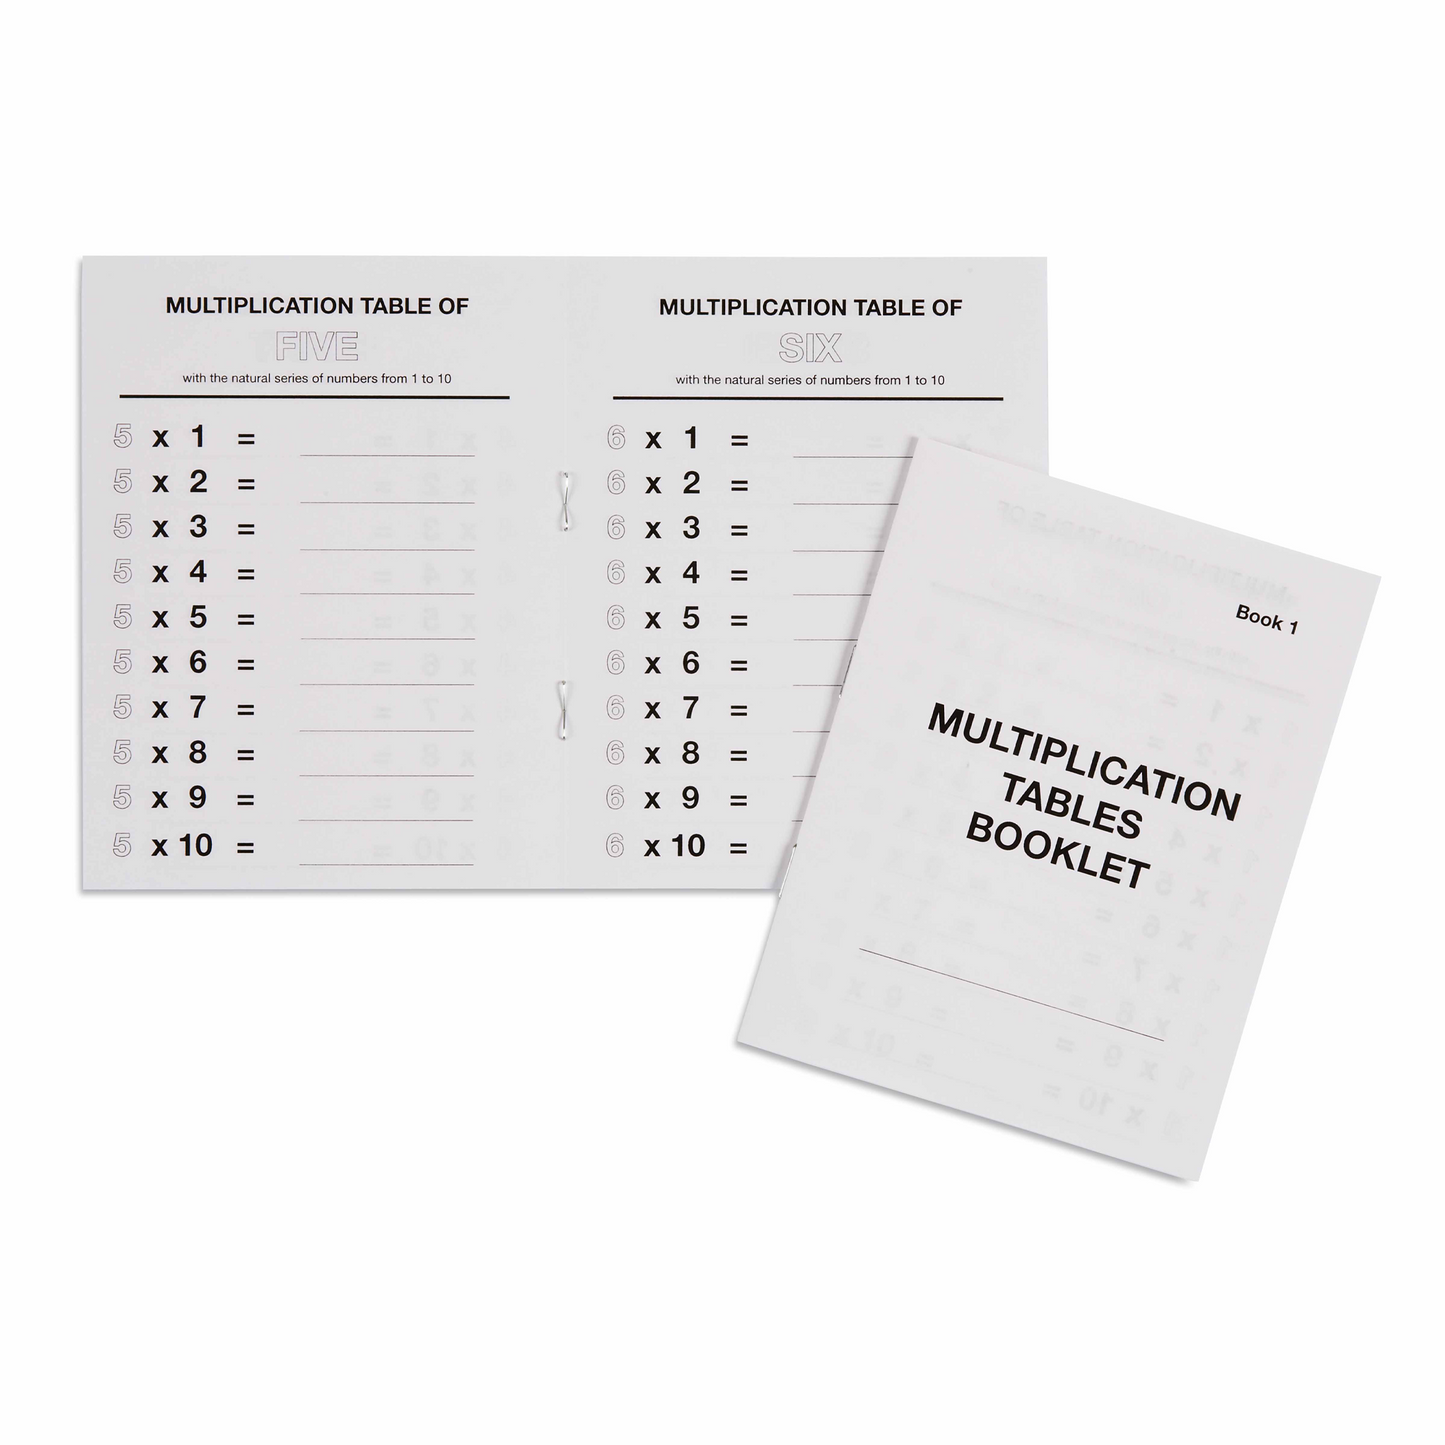 Booklet of multiplication tables n°1 - Nienhuis AMI